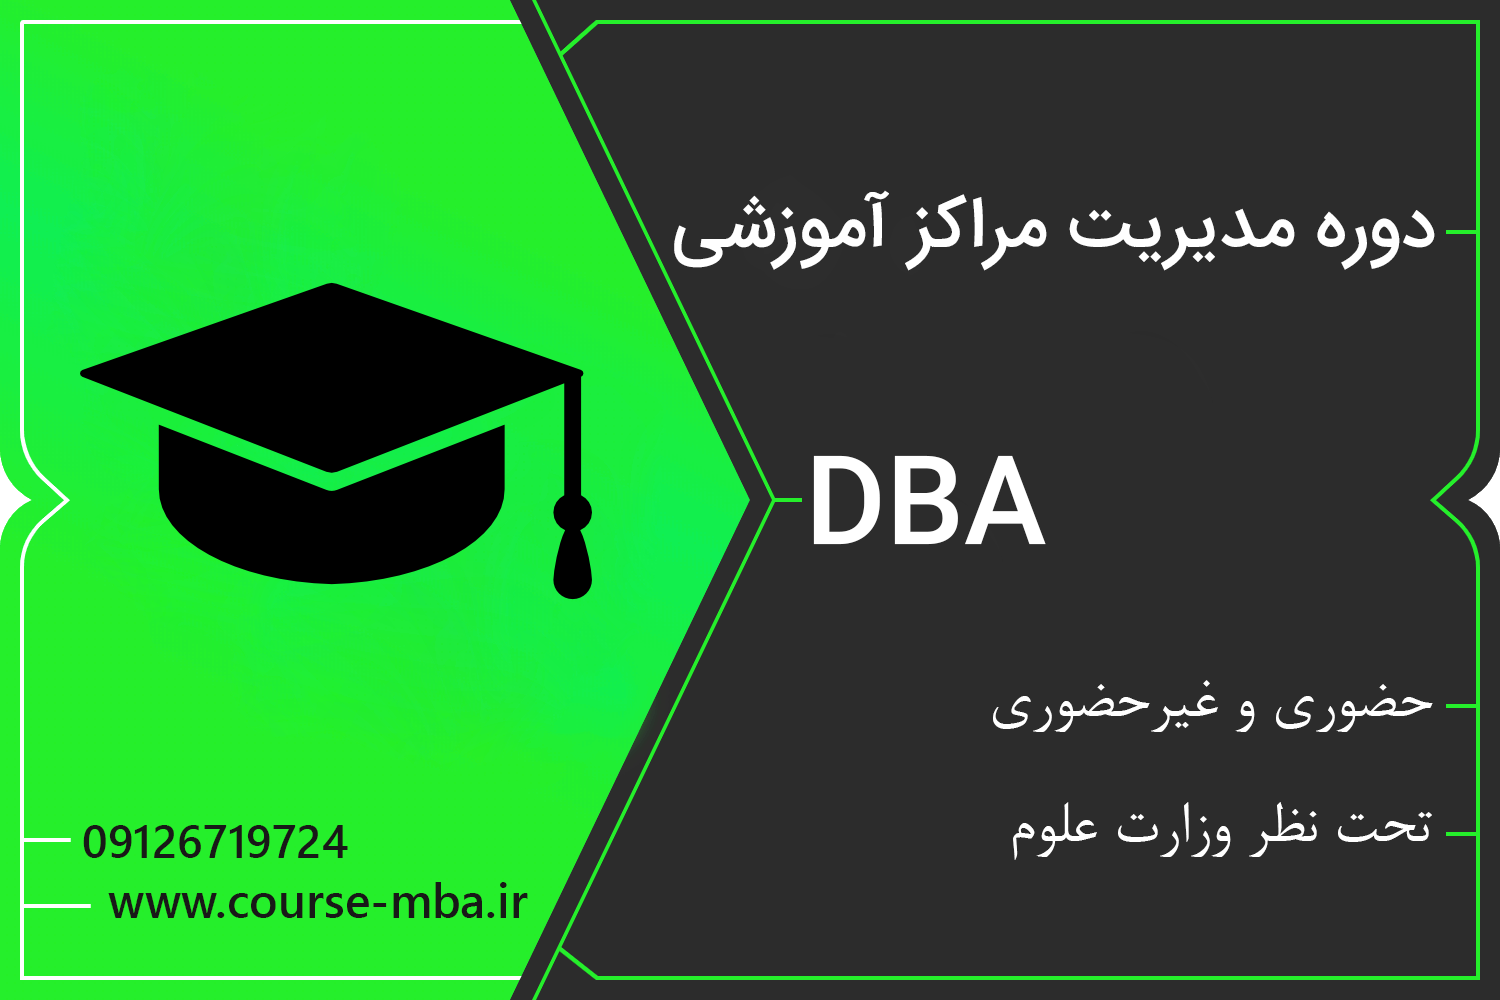 دوره مدیریت مراکز آموزشی | مدرک DBA مدیریت مراکز آموزشی